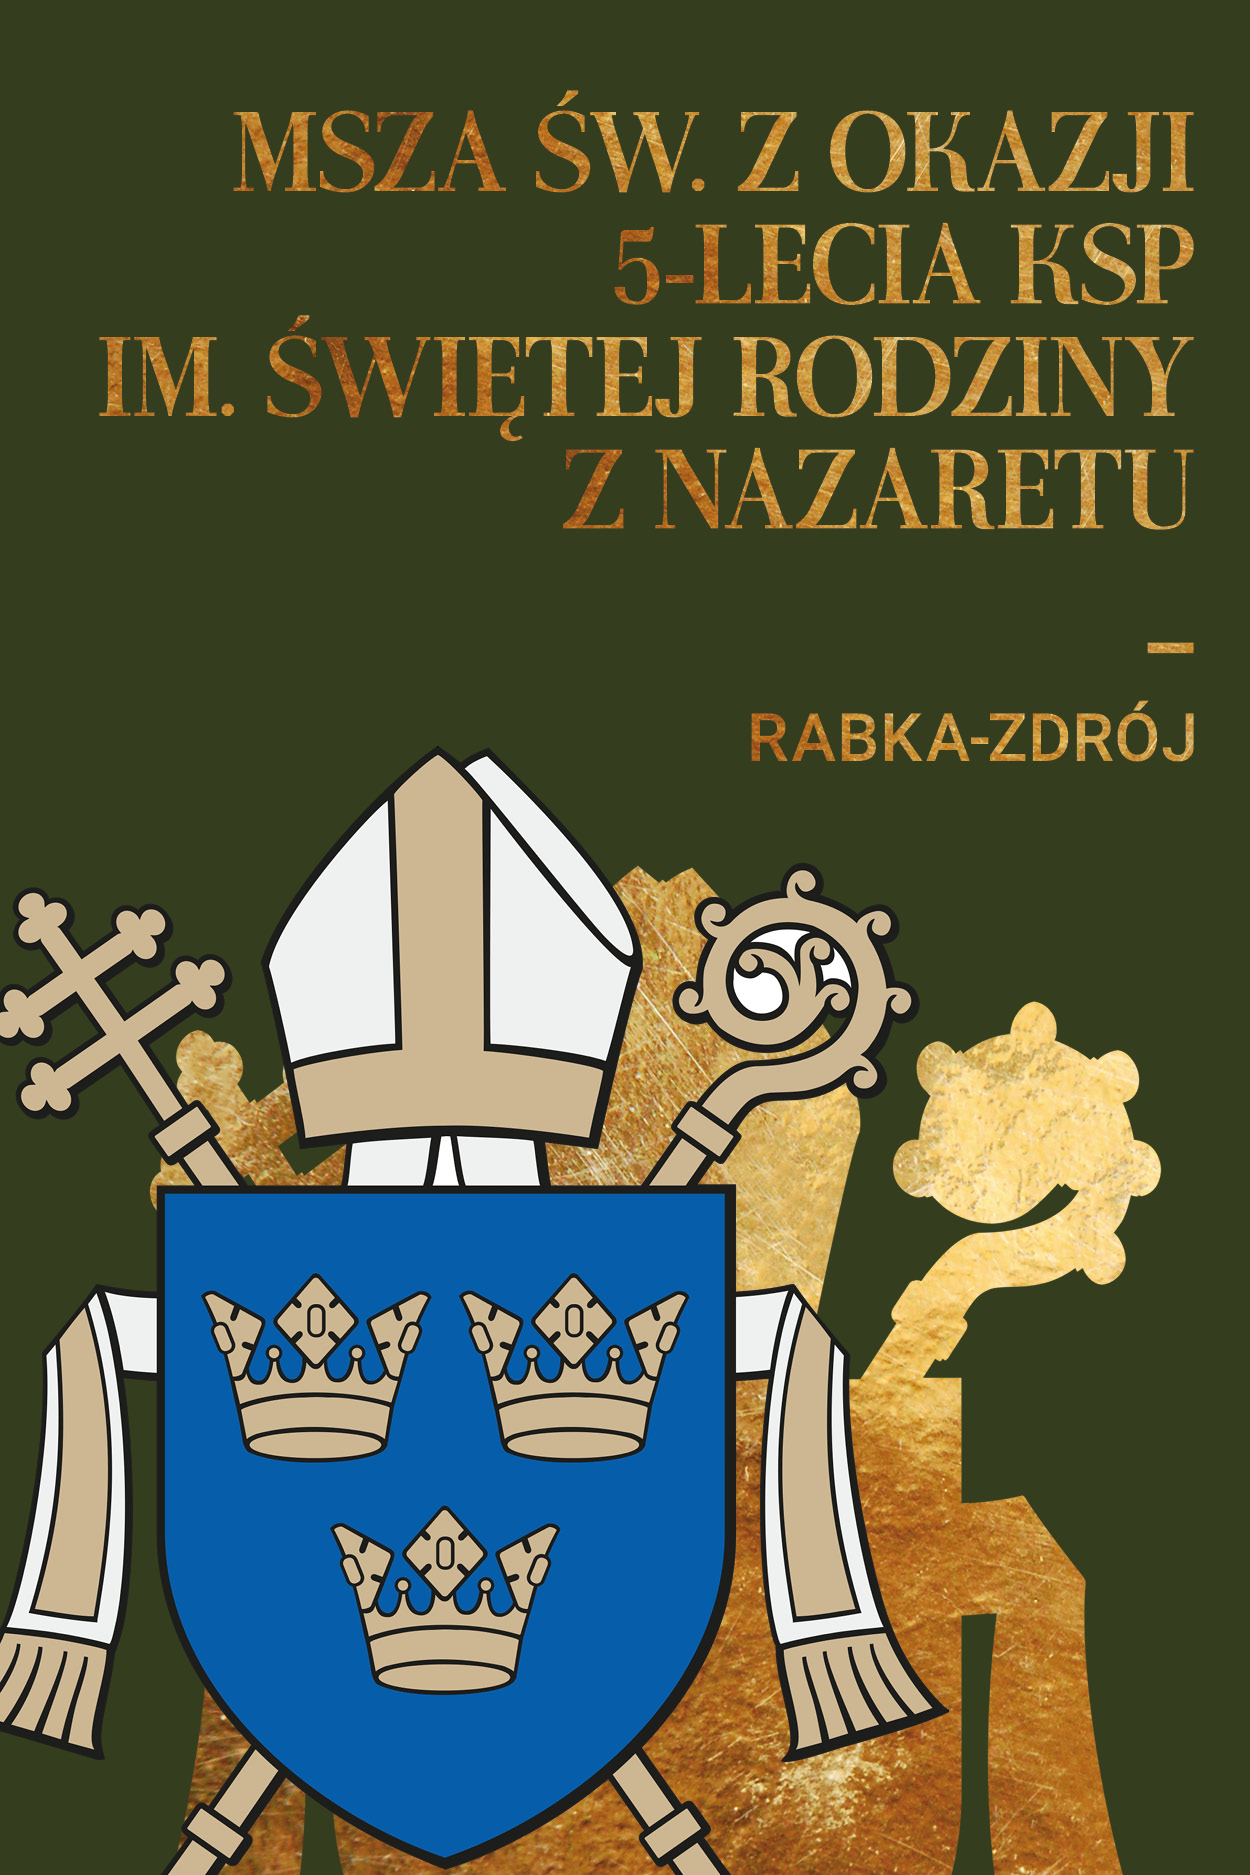 Msza św. z okazji 5-lecia KSP im. Świętej Rodziny z Nazaretu w Rabce-Zdroju